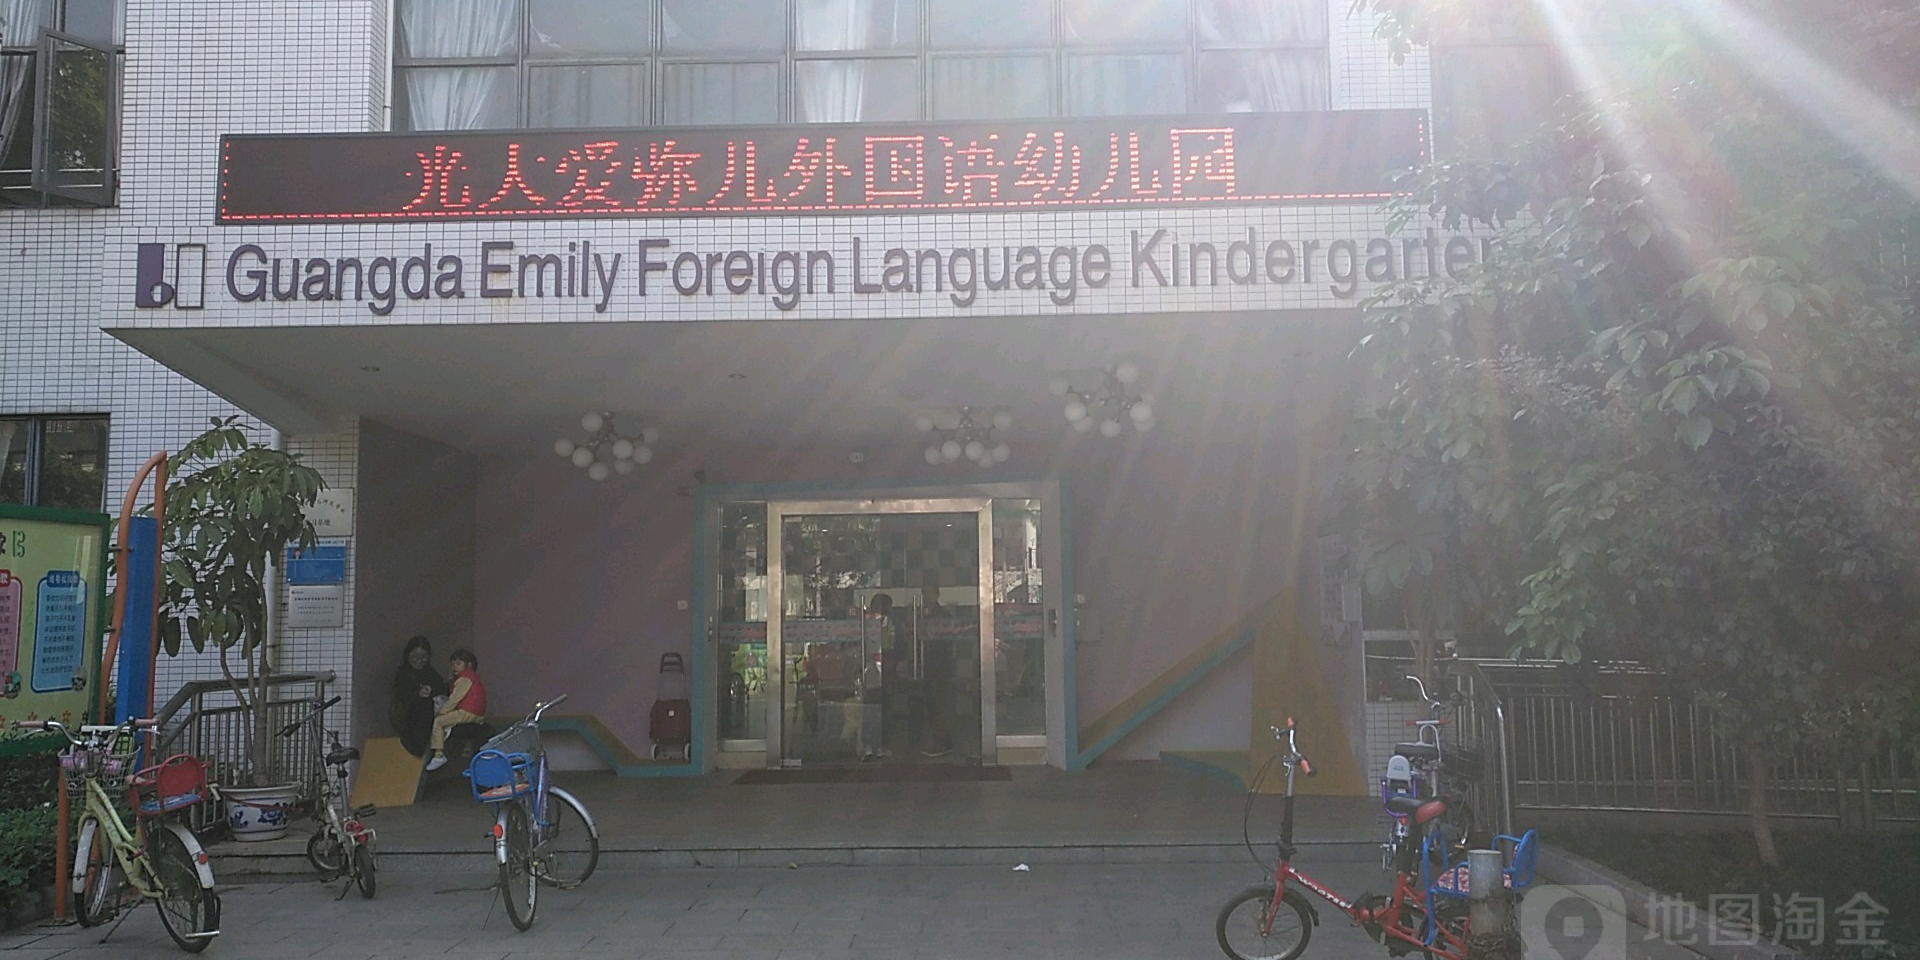 光大爱弥儿外国语幼儿园